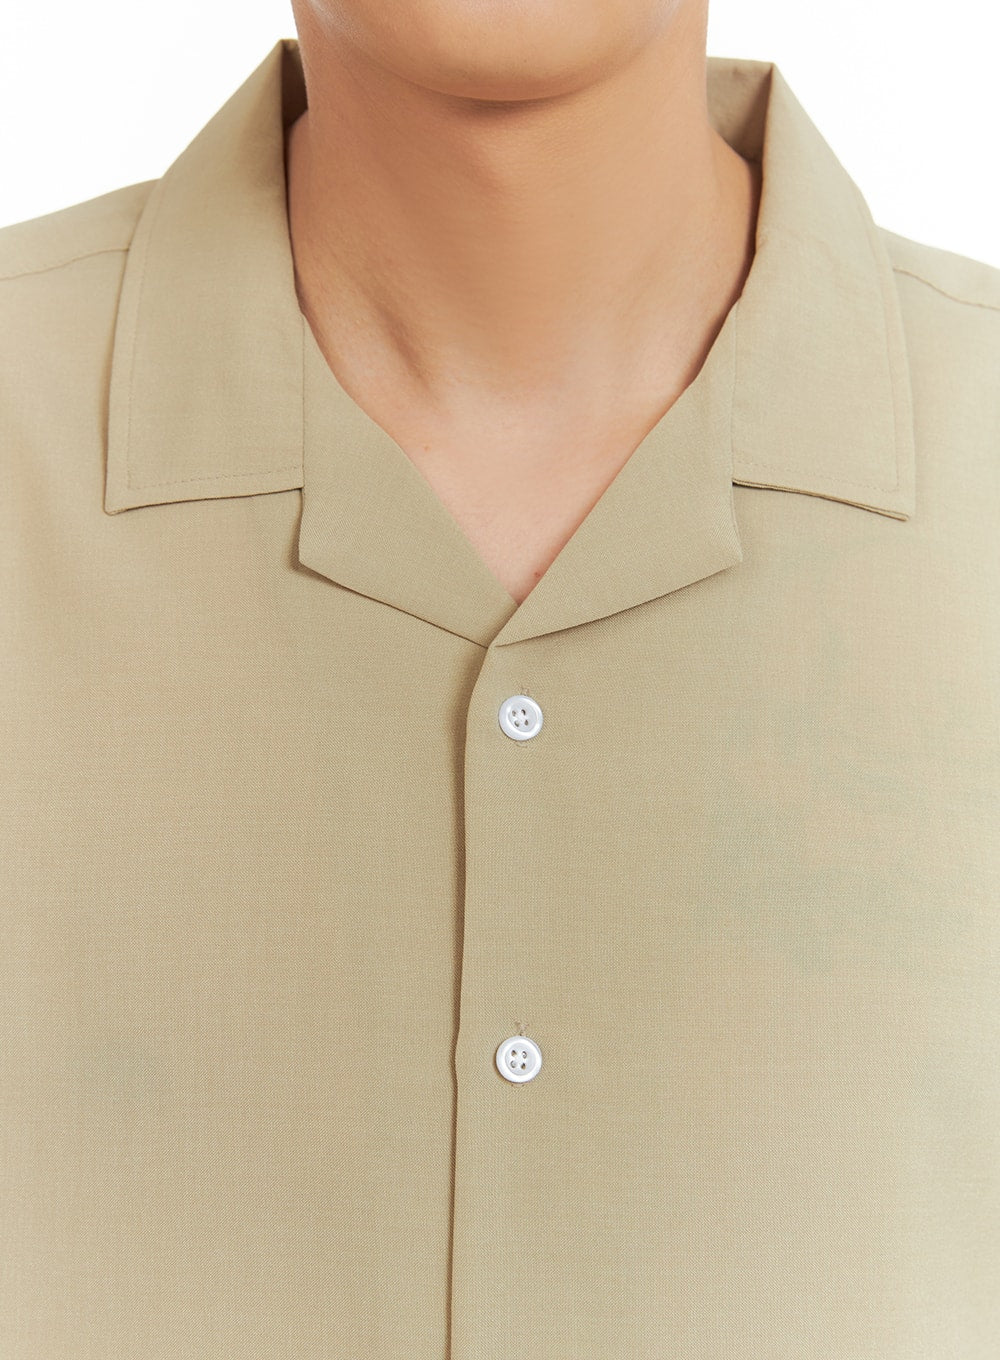 mens-open-collar-buttoned-shirt-ia401